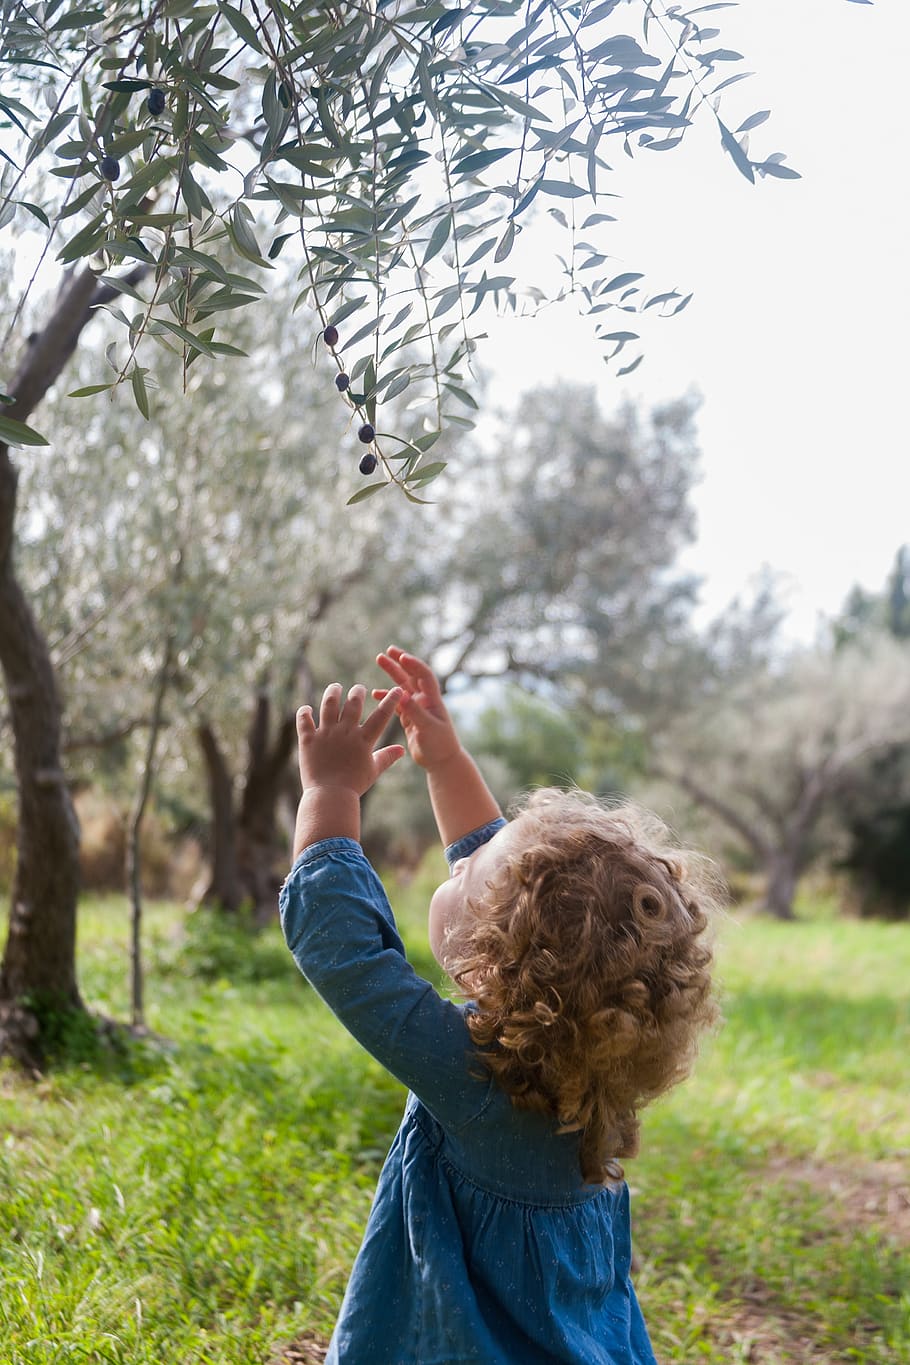 aceitunas, campaña, agricultura, olivo, árbol, mediterráneo, rama, niña, rizado, planta